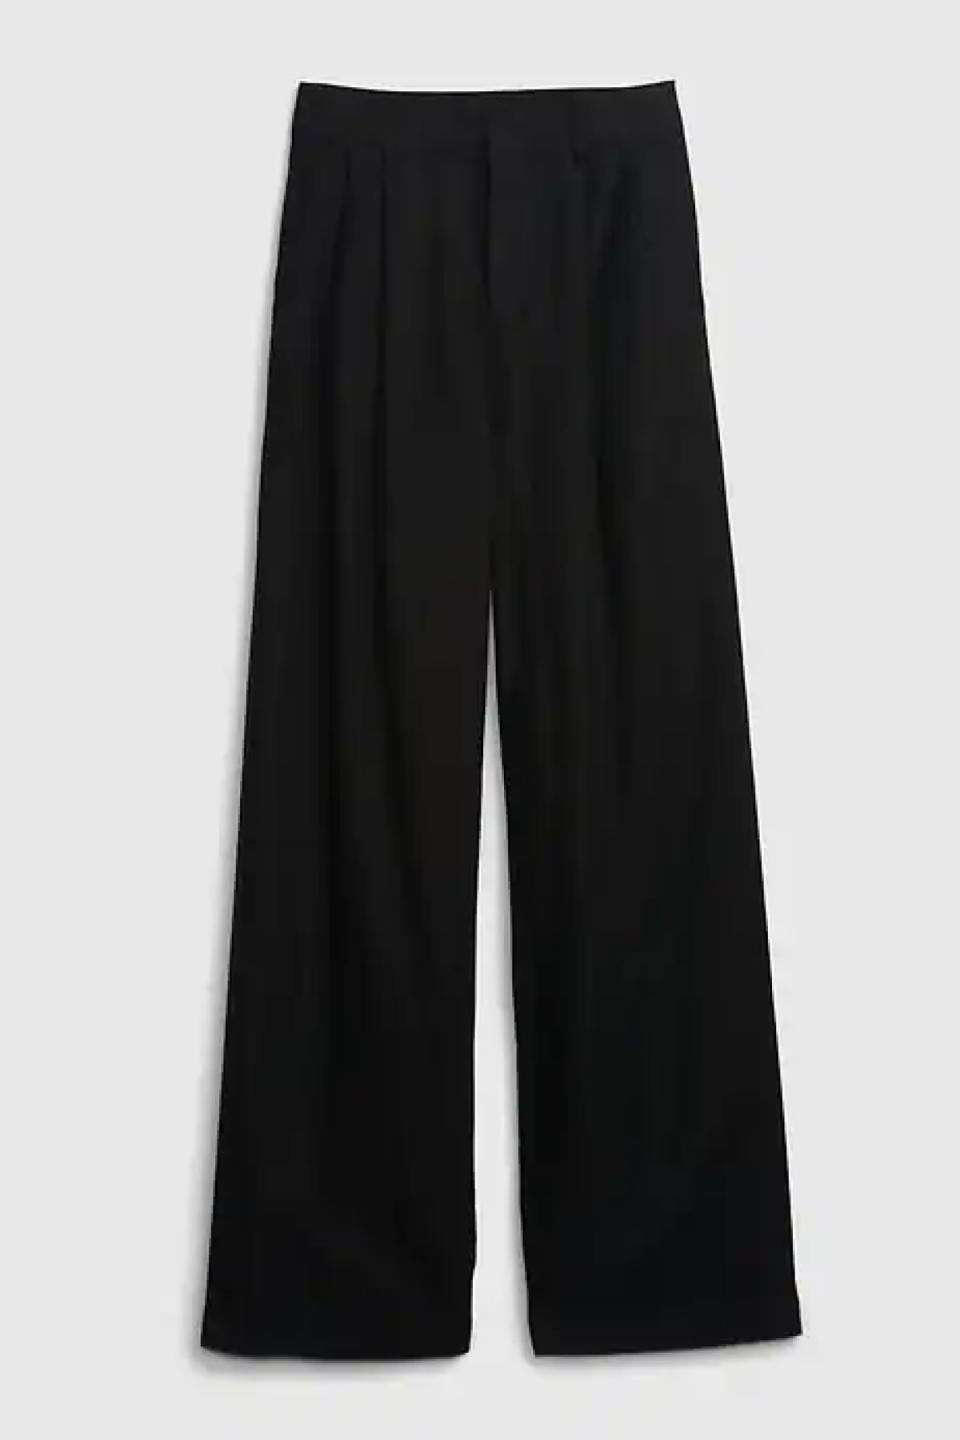 Gap Linen-Cotton Pleated Pants